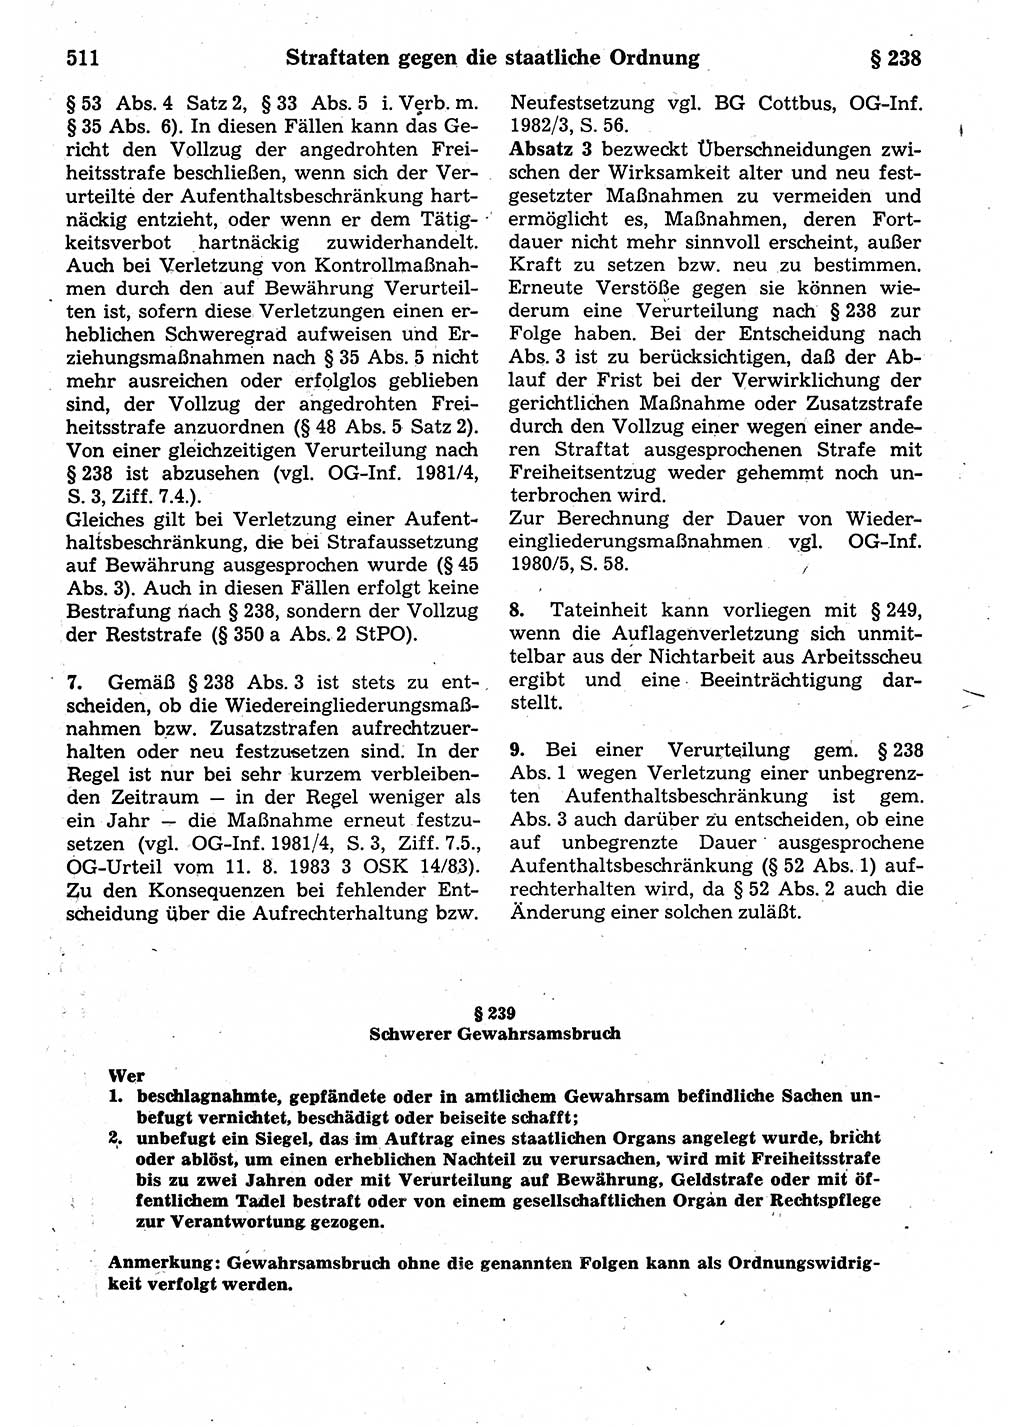 Strafrecht der Deutschen Demokratischen Republik (DDR), Kommentar zum Strafgesetzbuch (StGB) 1987, Seite 511 (Strafr. DDR Komm. StGB 1987, S. 511)